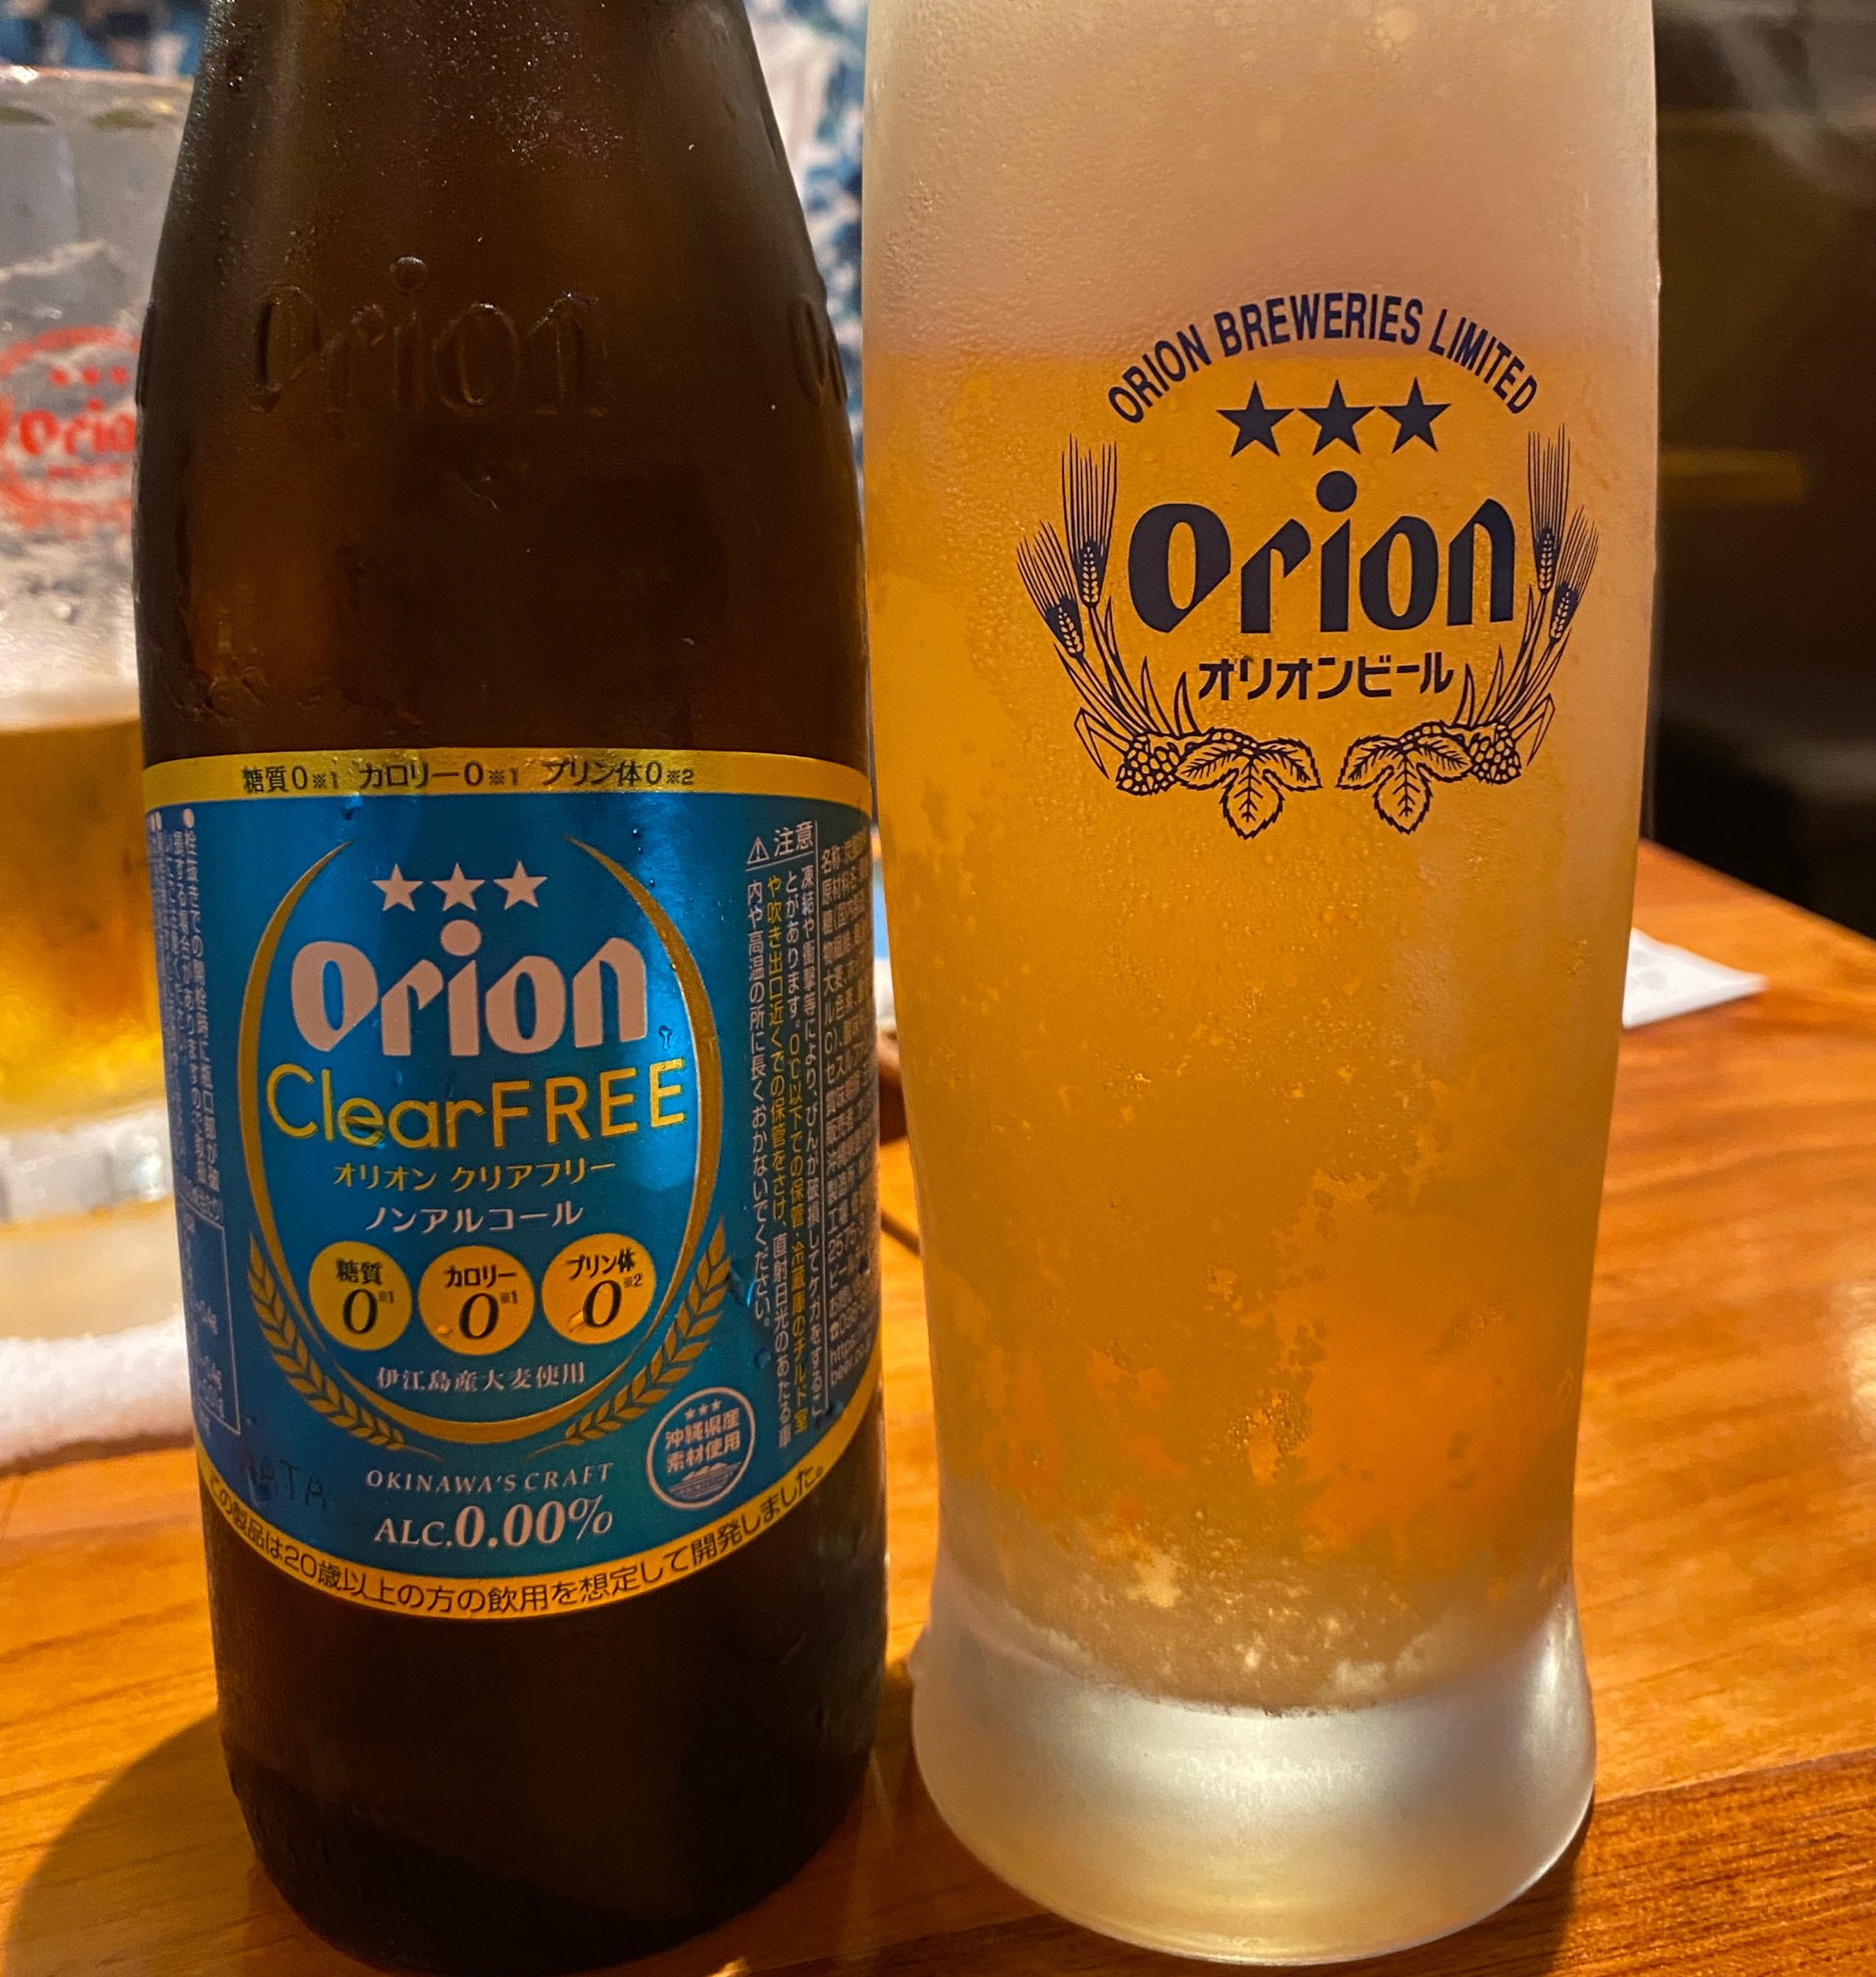 オリオンビール 公式 リニューアルしてさらに美味しくなったオリオンのノンアルコール クリアフリー 沖縄県産大麦を使用してまるでビールのような味わいです ５月最後の金曜日 おつカリー様でした T Co 7l4s3pktgh Twitter